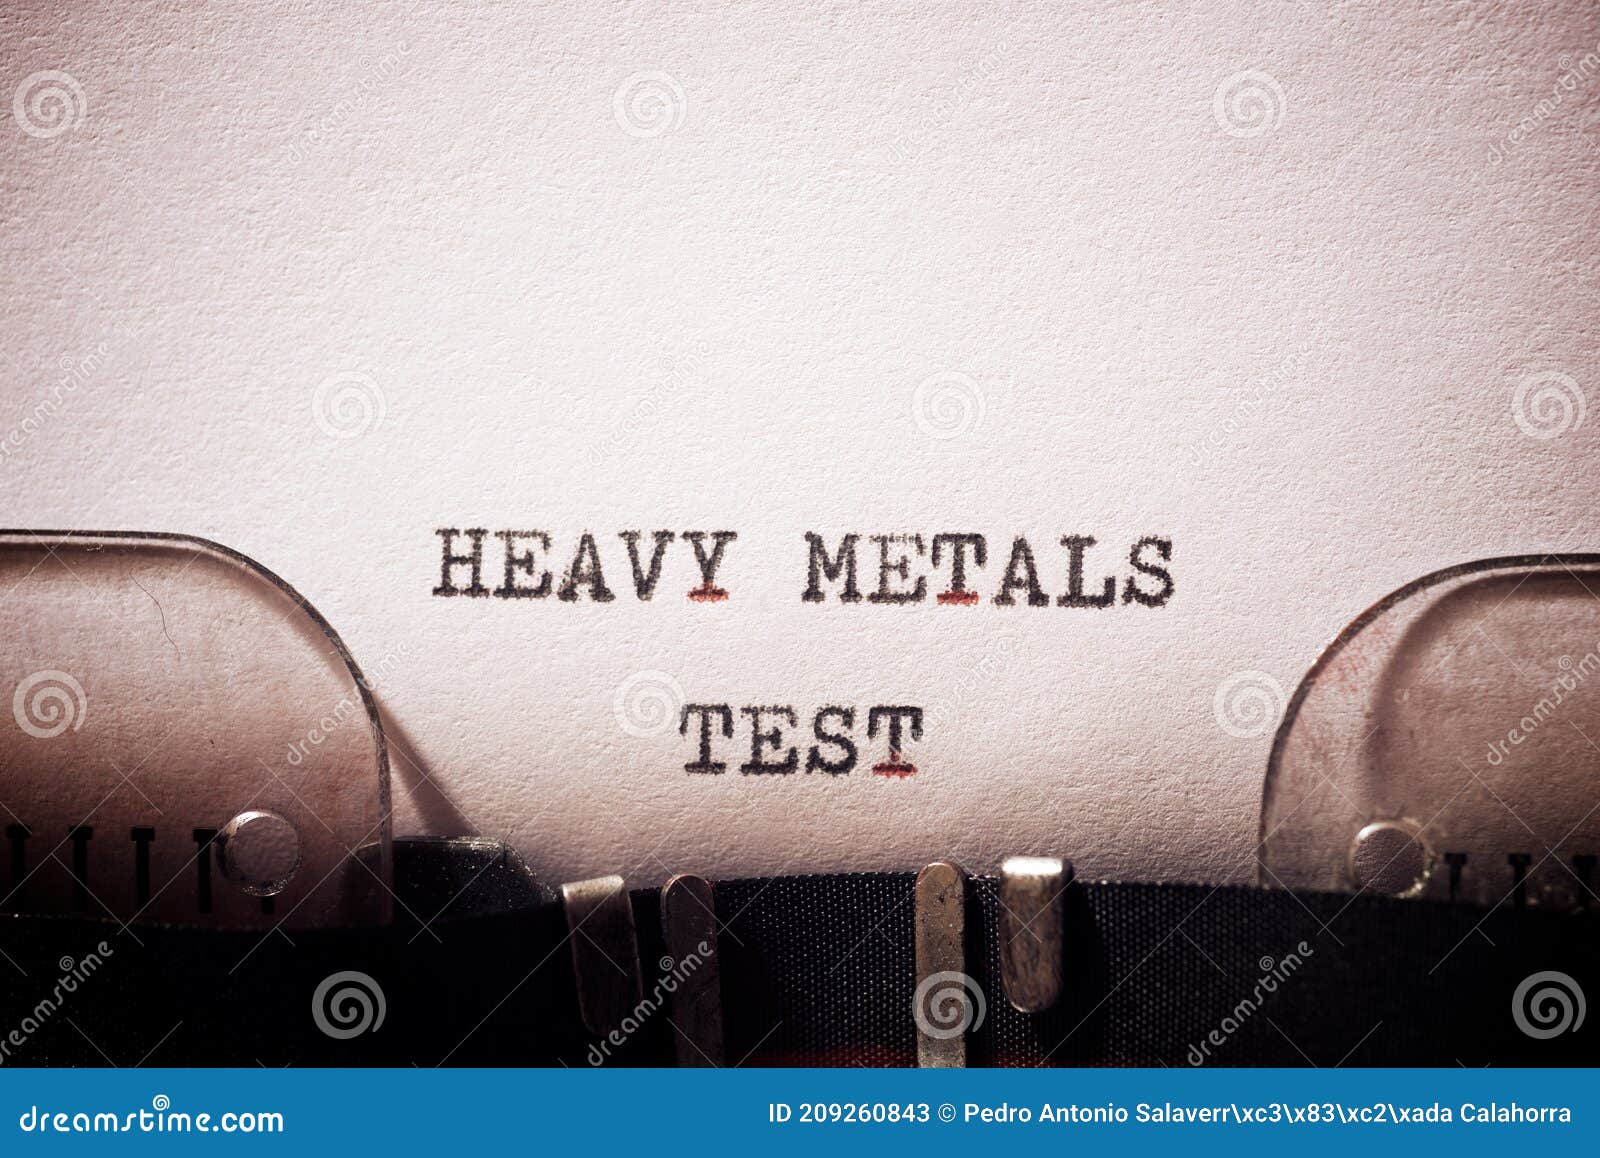 heavy metal test